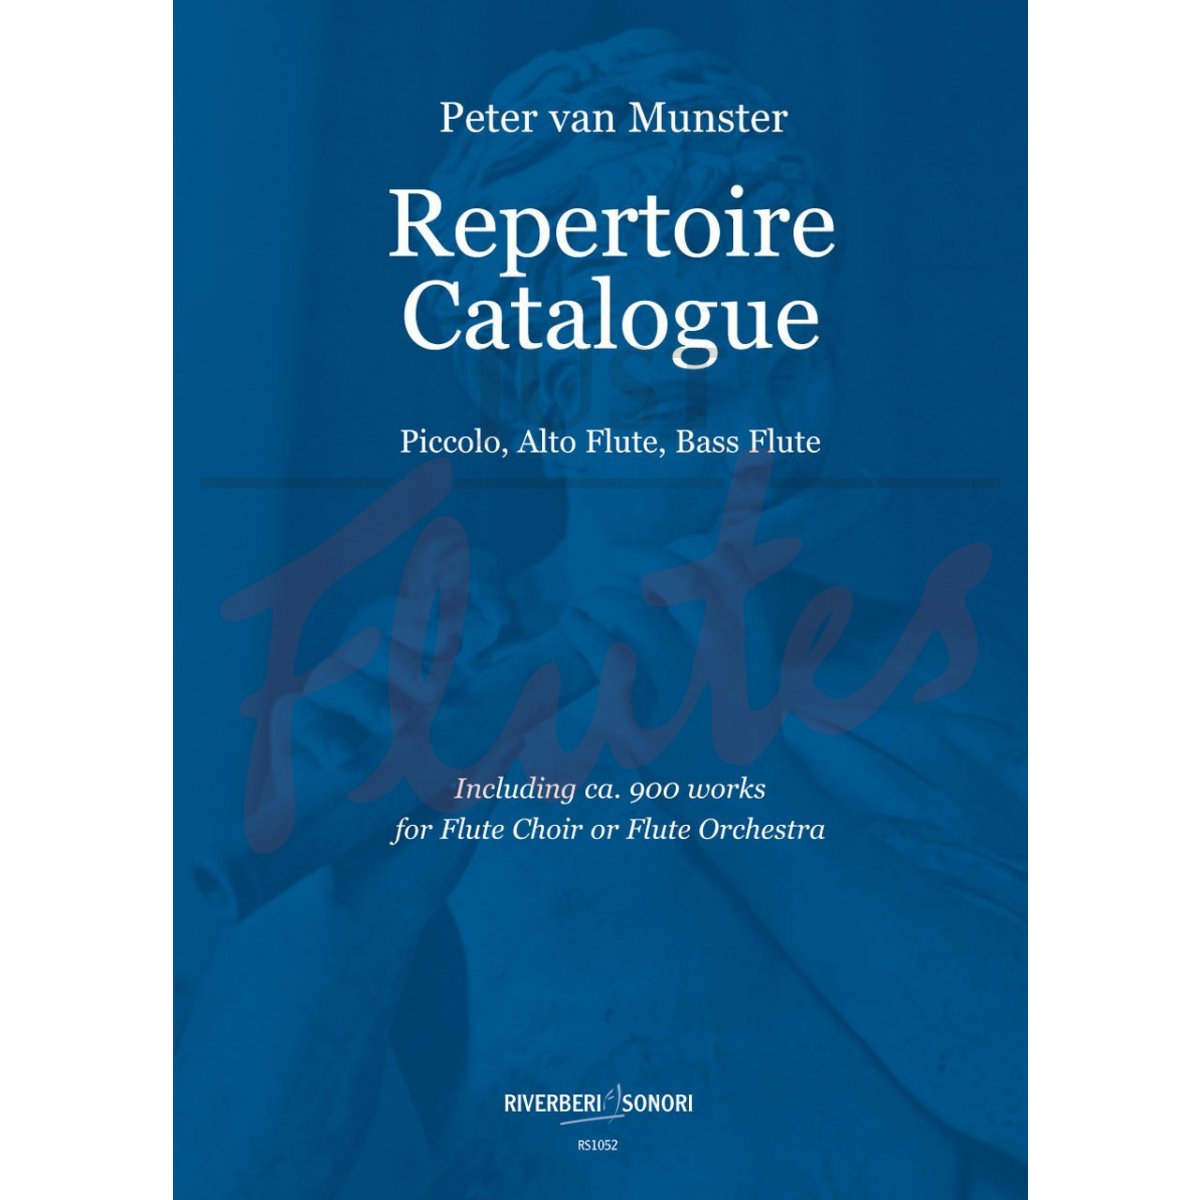 Repertoire Catalogue for Piccolo, Alto Flute, Bass Flute and Flute Choir